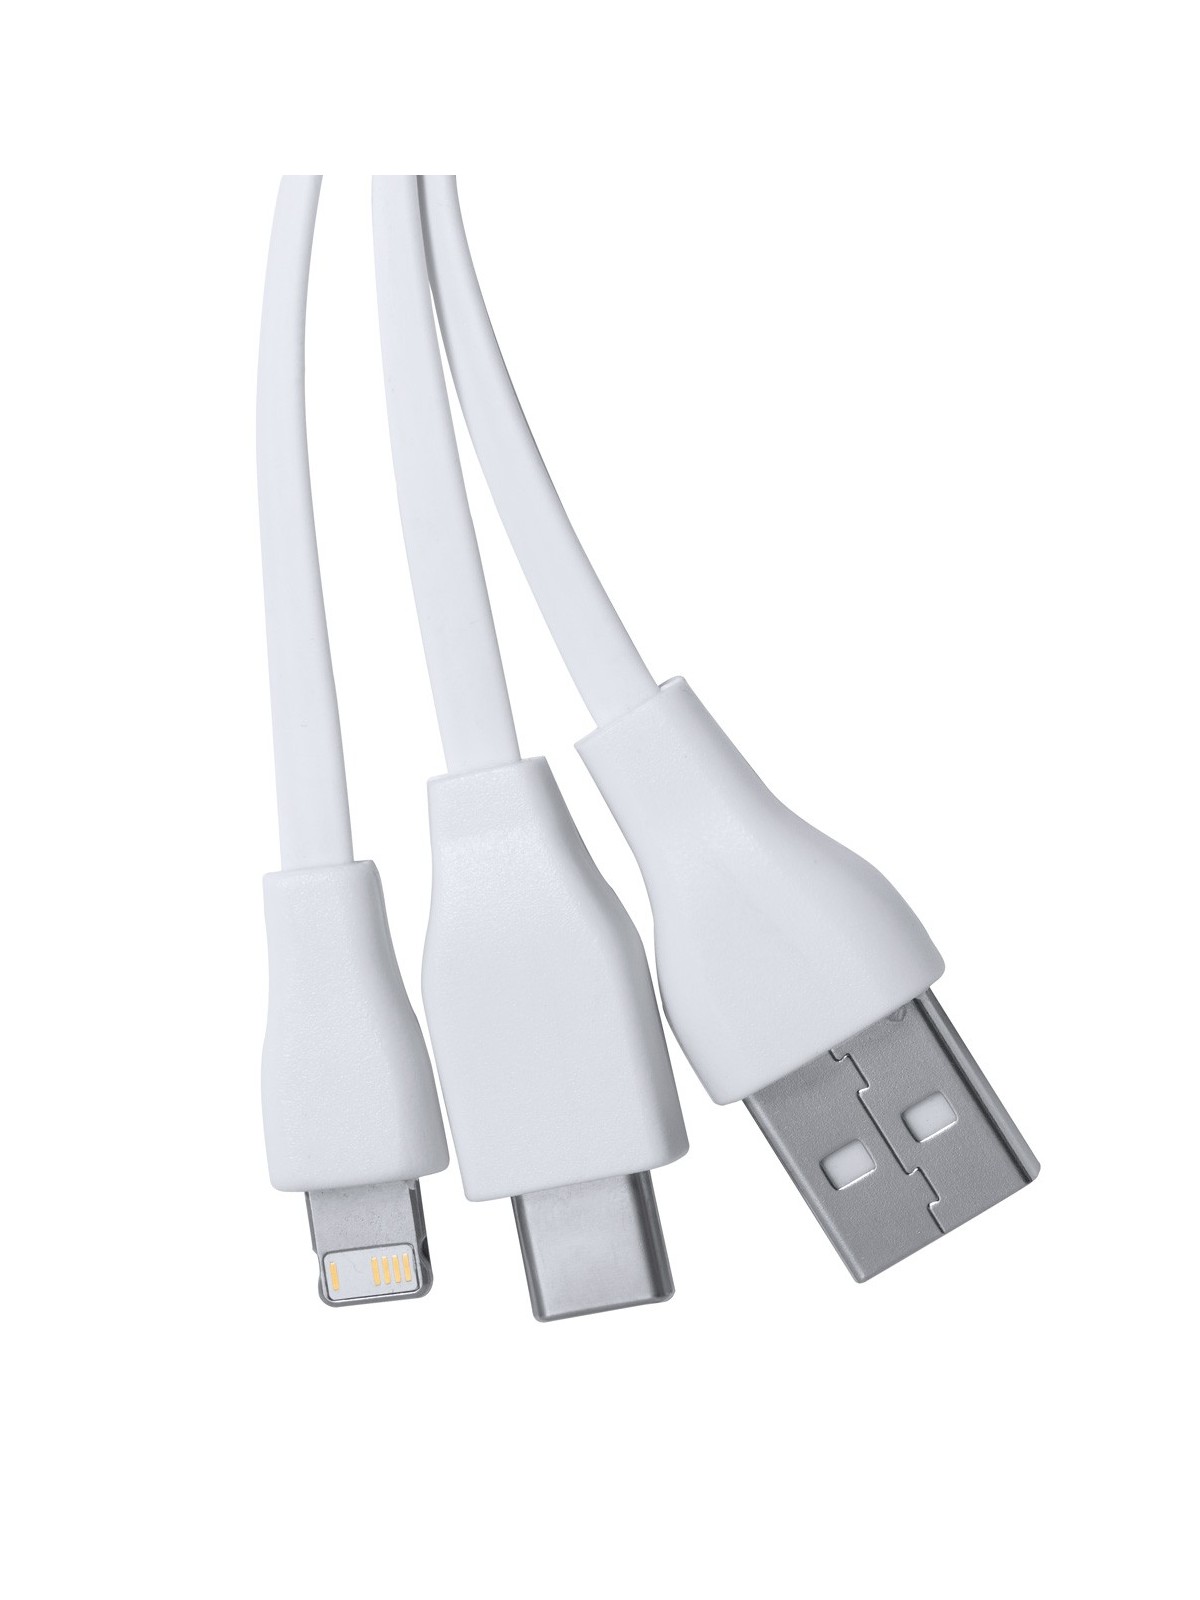 10-528 Porte-clés avec câbles USB  personnalisé